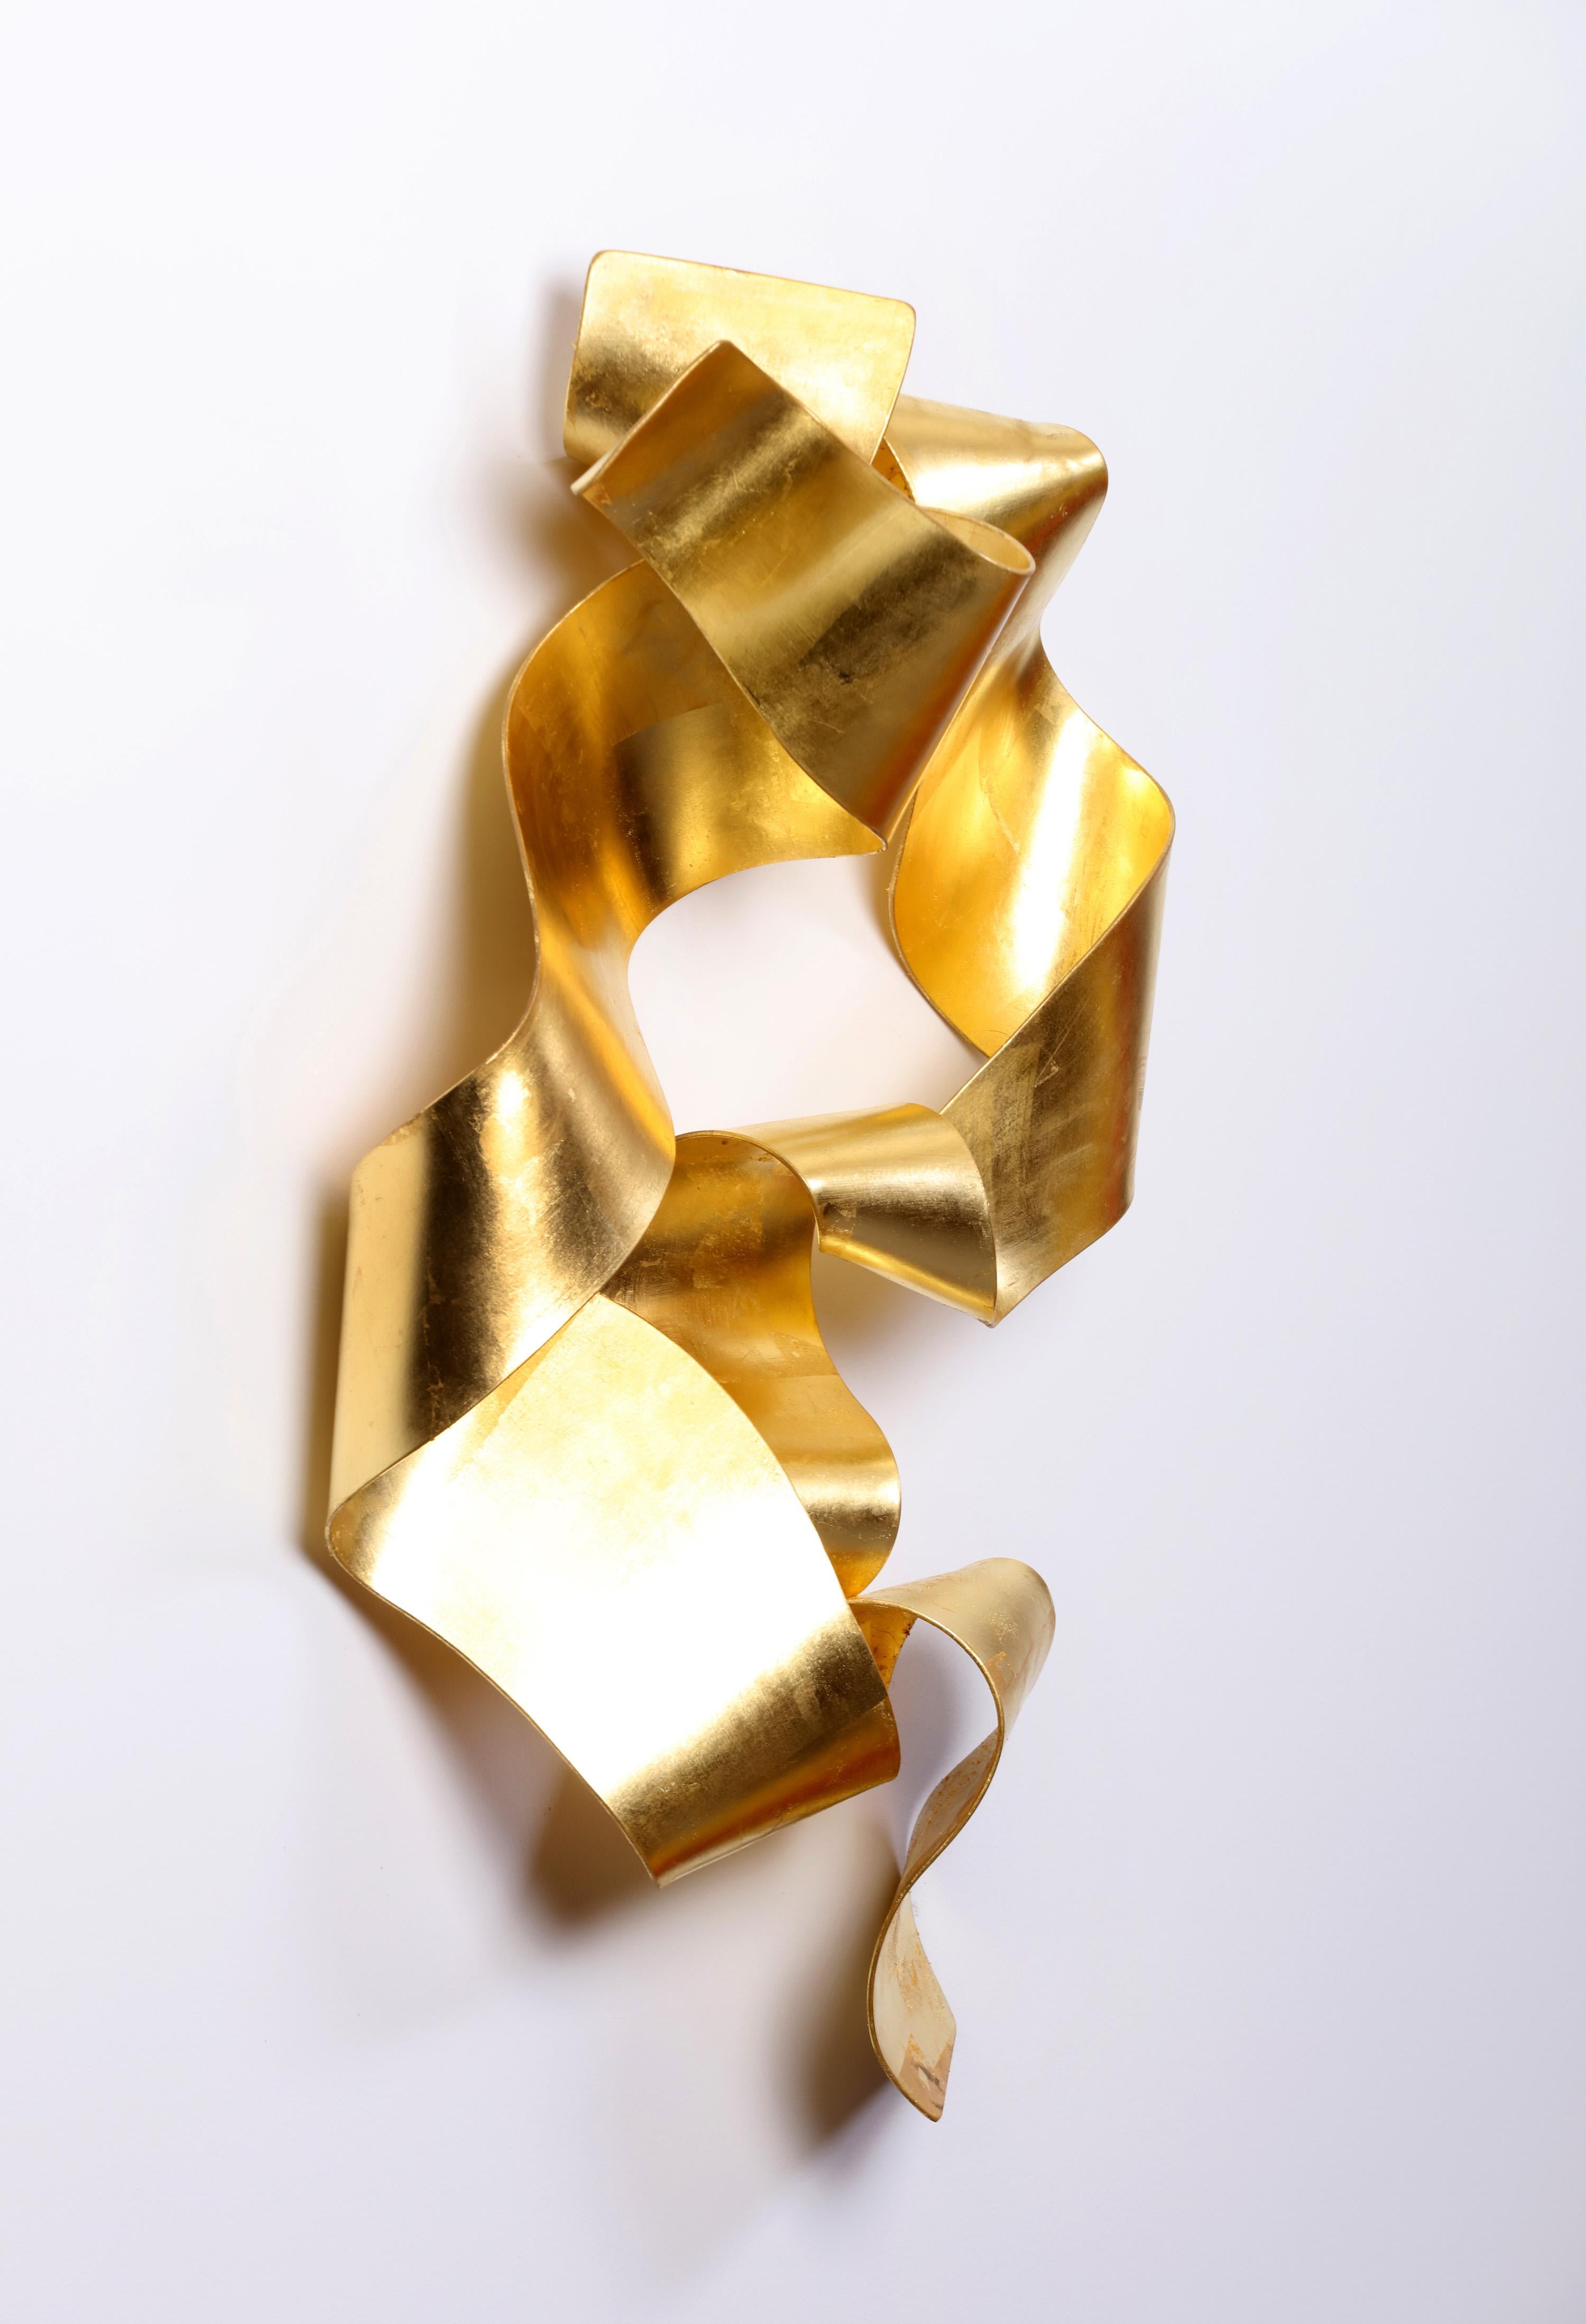 Soul Gate Eldorado - contemporary, ribbon, 24K gold, steel, wall sculpture - Sculpture by Stefan Duerst